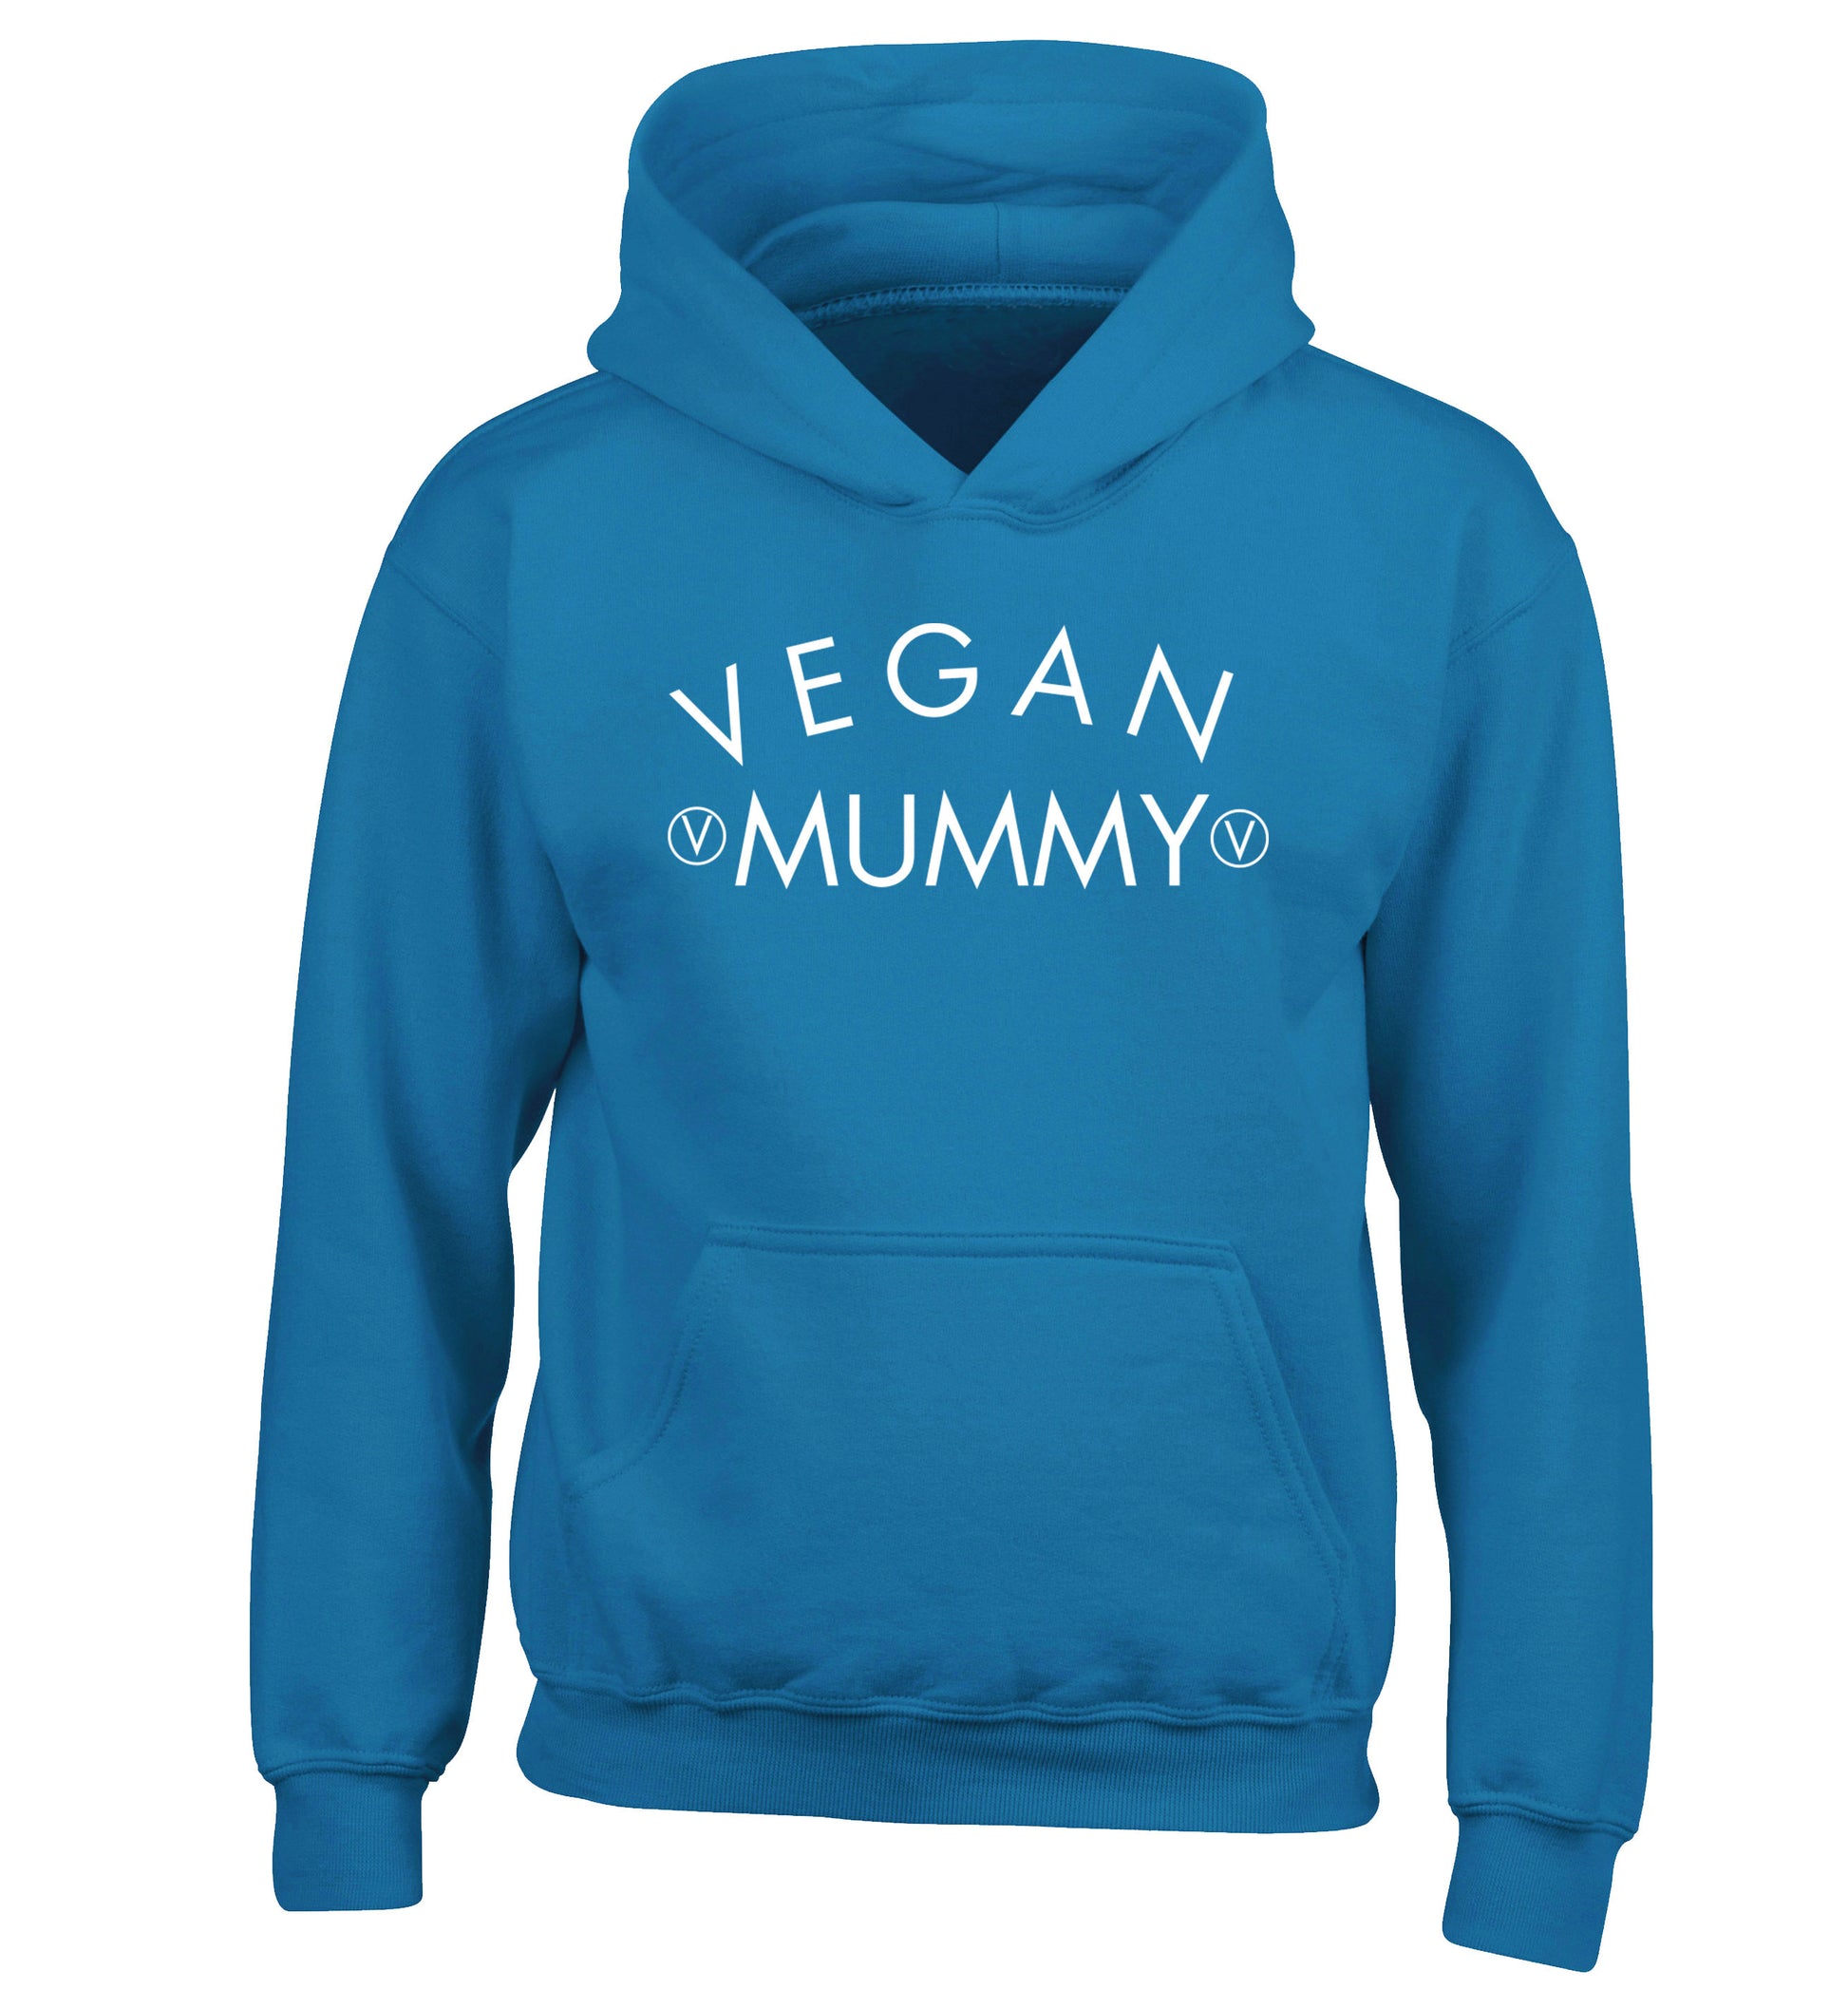 Vegan mummy children's blue hoodie 12-14 Years